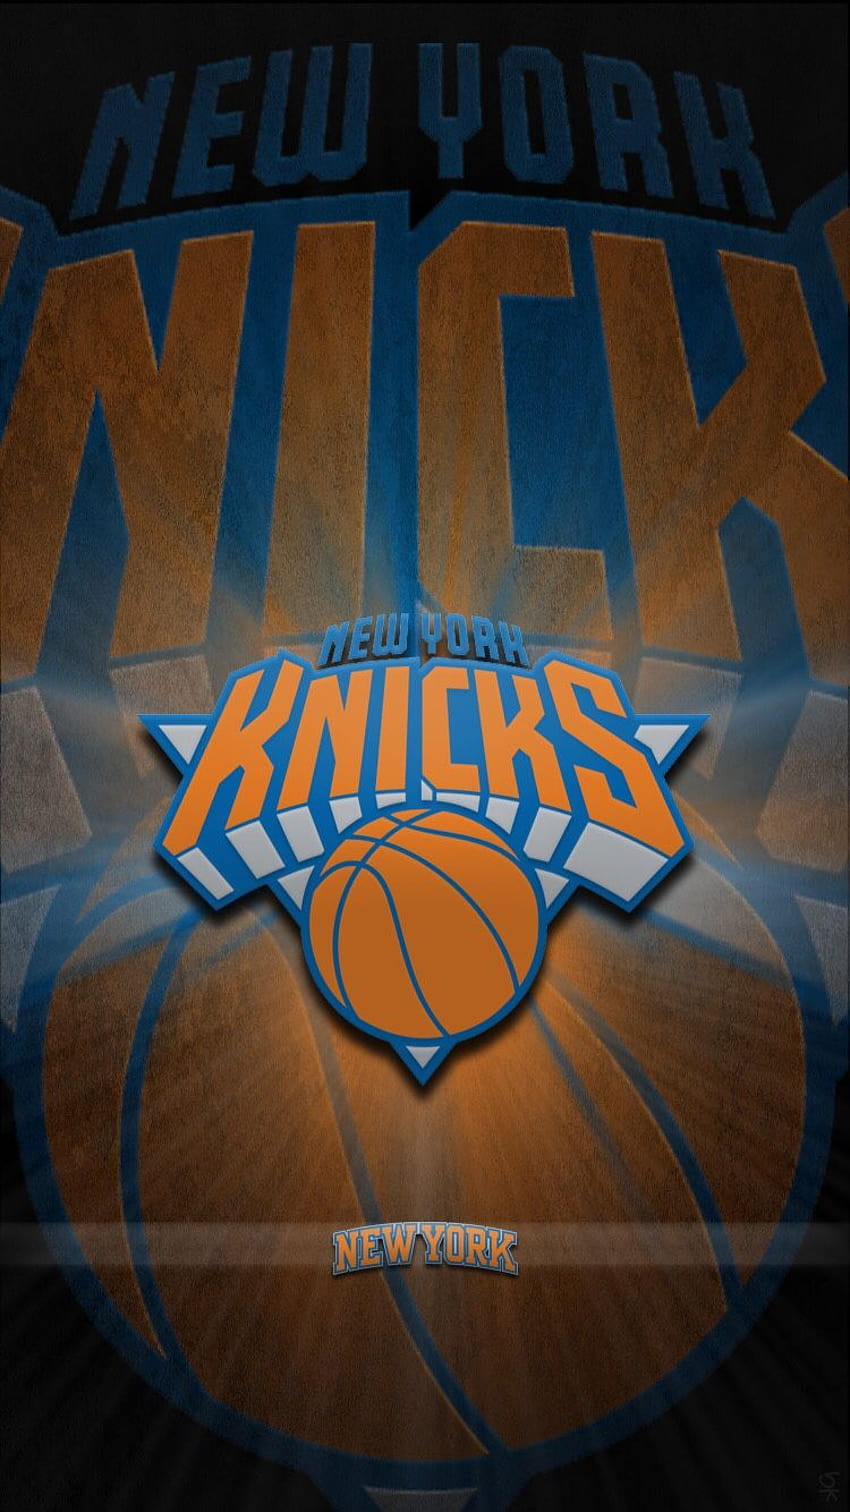 New York Knicks publicado por Ryan Sellers, iPhone de los New York Knicks fondo de pantalla del teléfono